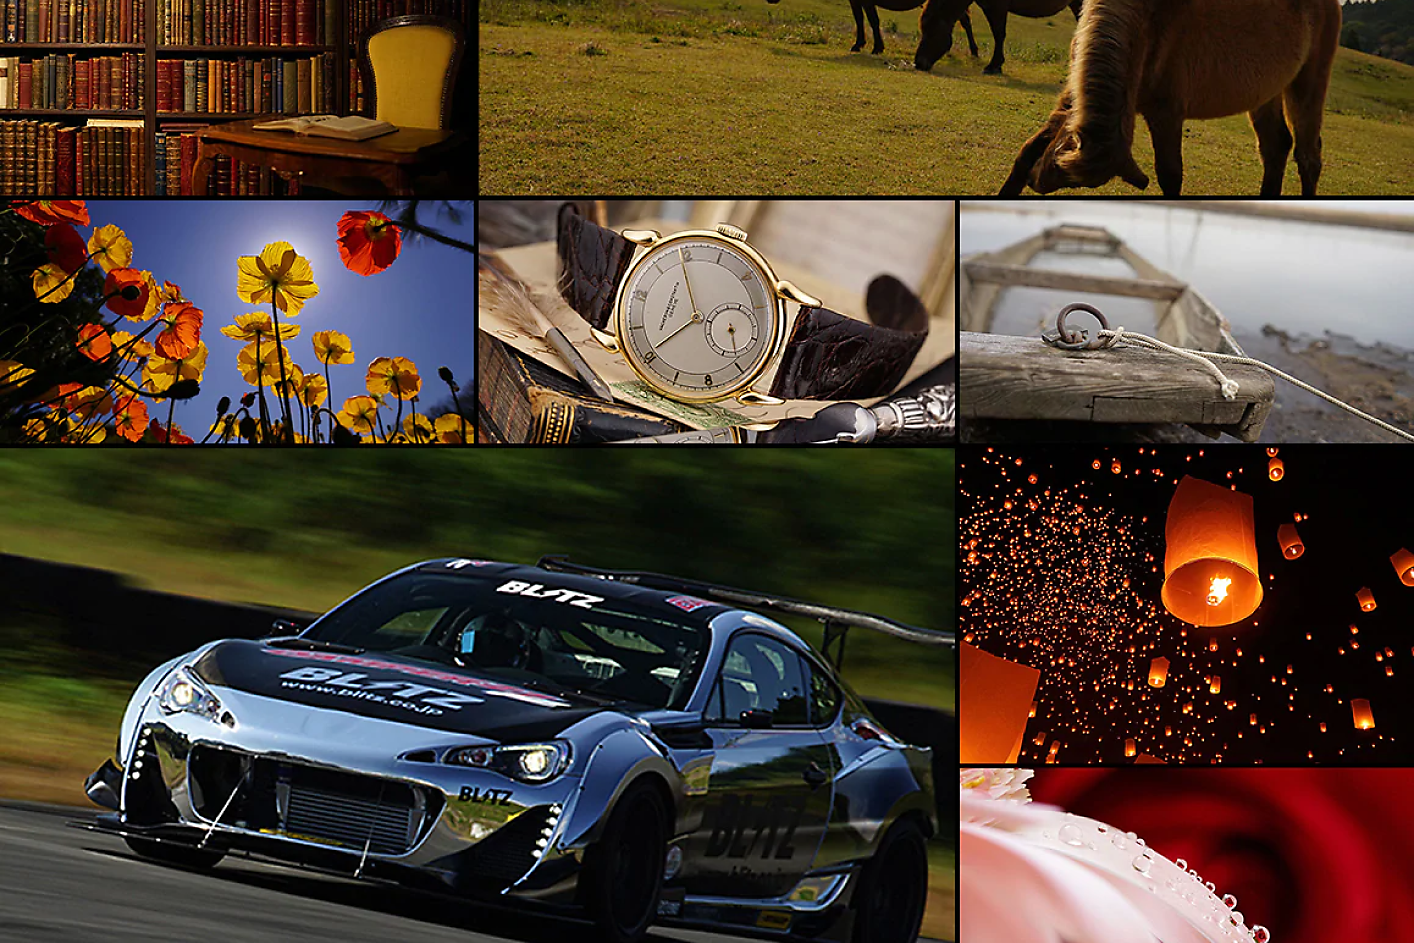 Spalvotas 8 nuotraukų koliažas, kuriame lenktynių automobilis, žirgas, laikrodis ir gėlėsSpalvotas 8 nuotraukų koliažas, kuriame lenktynių automobilis, žirgas, laikrodis ir gėlės